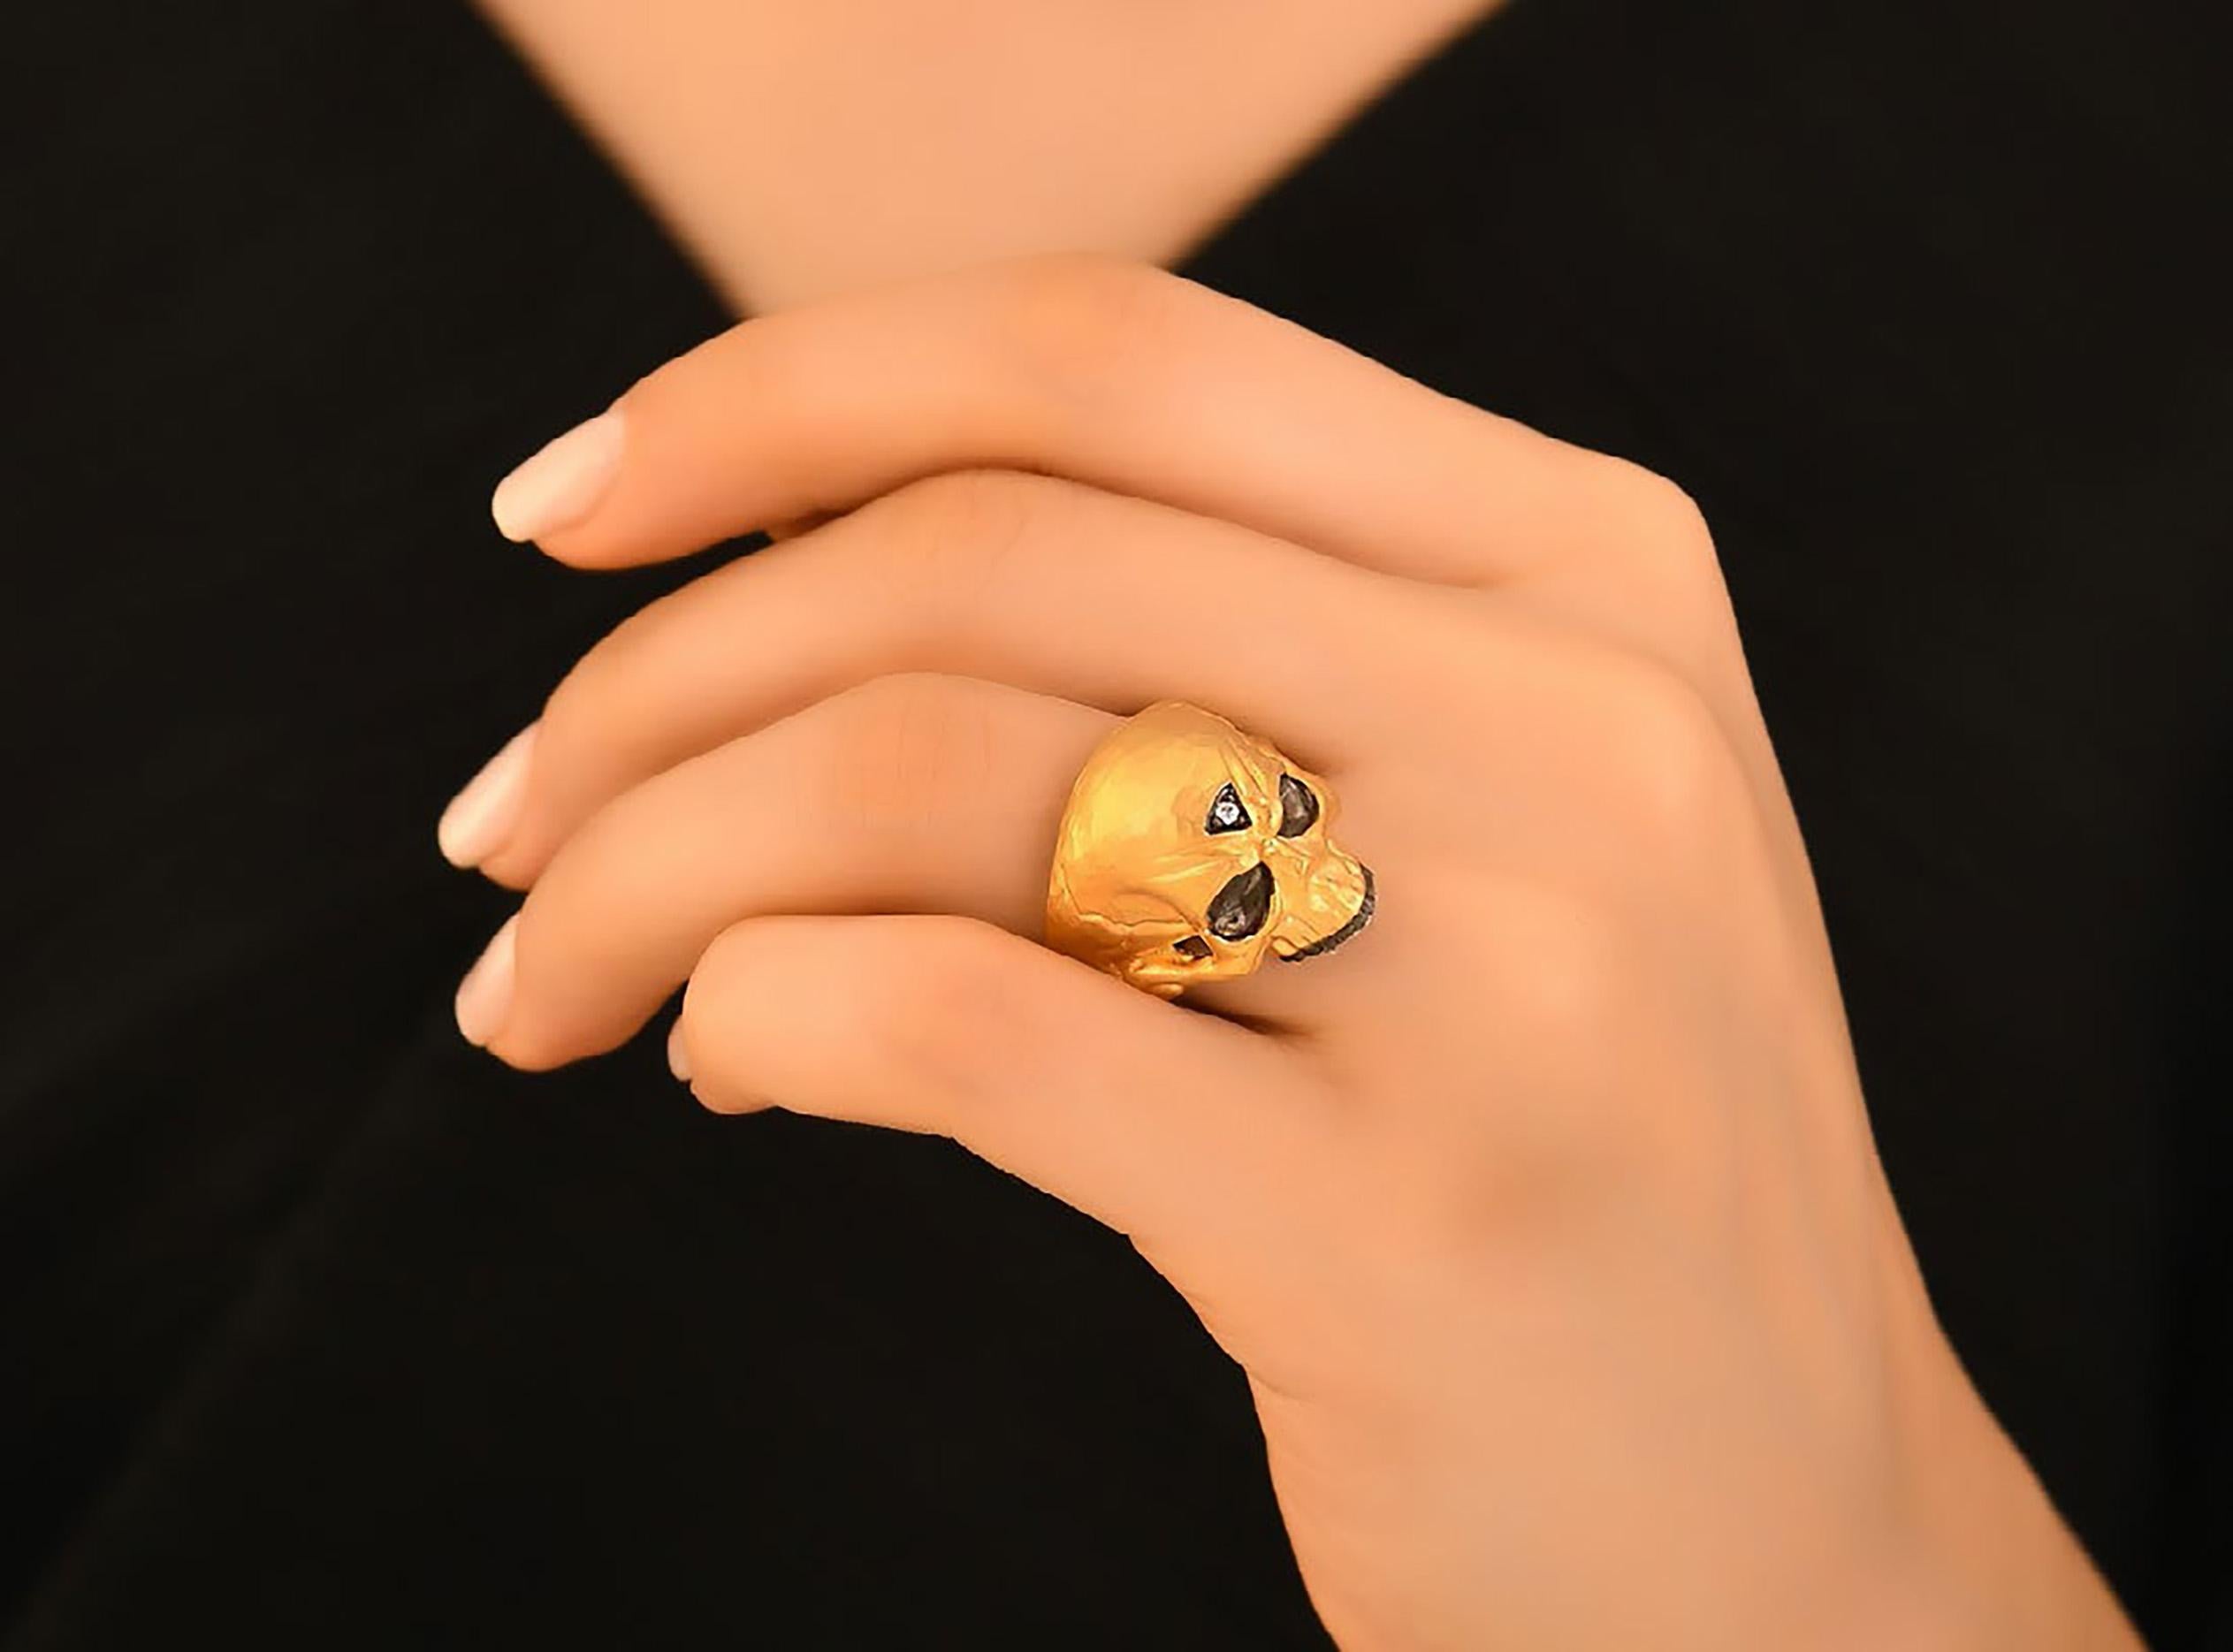 Momento Mori Skull Ring mit Diamant 24k & SS von Kurtulan Jewellery of Istanbul, Türkei. 
Für andere Größen wenden Sie sich bitte an die Galerie. Dieses Stück wird auf Bestellung gefertigt und benötigt etwa 4-6 Wochen für die Lieferung.
ÜBER